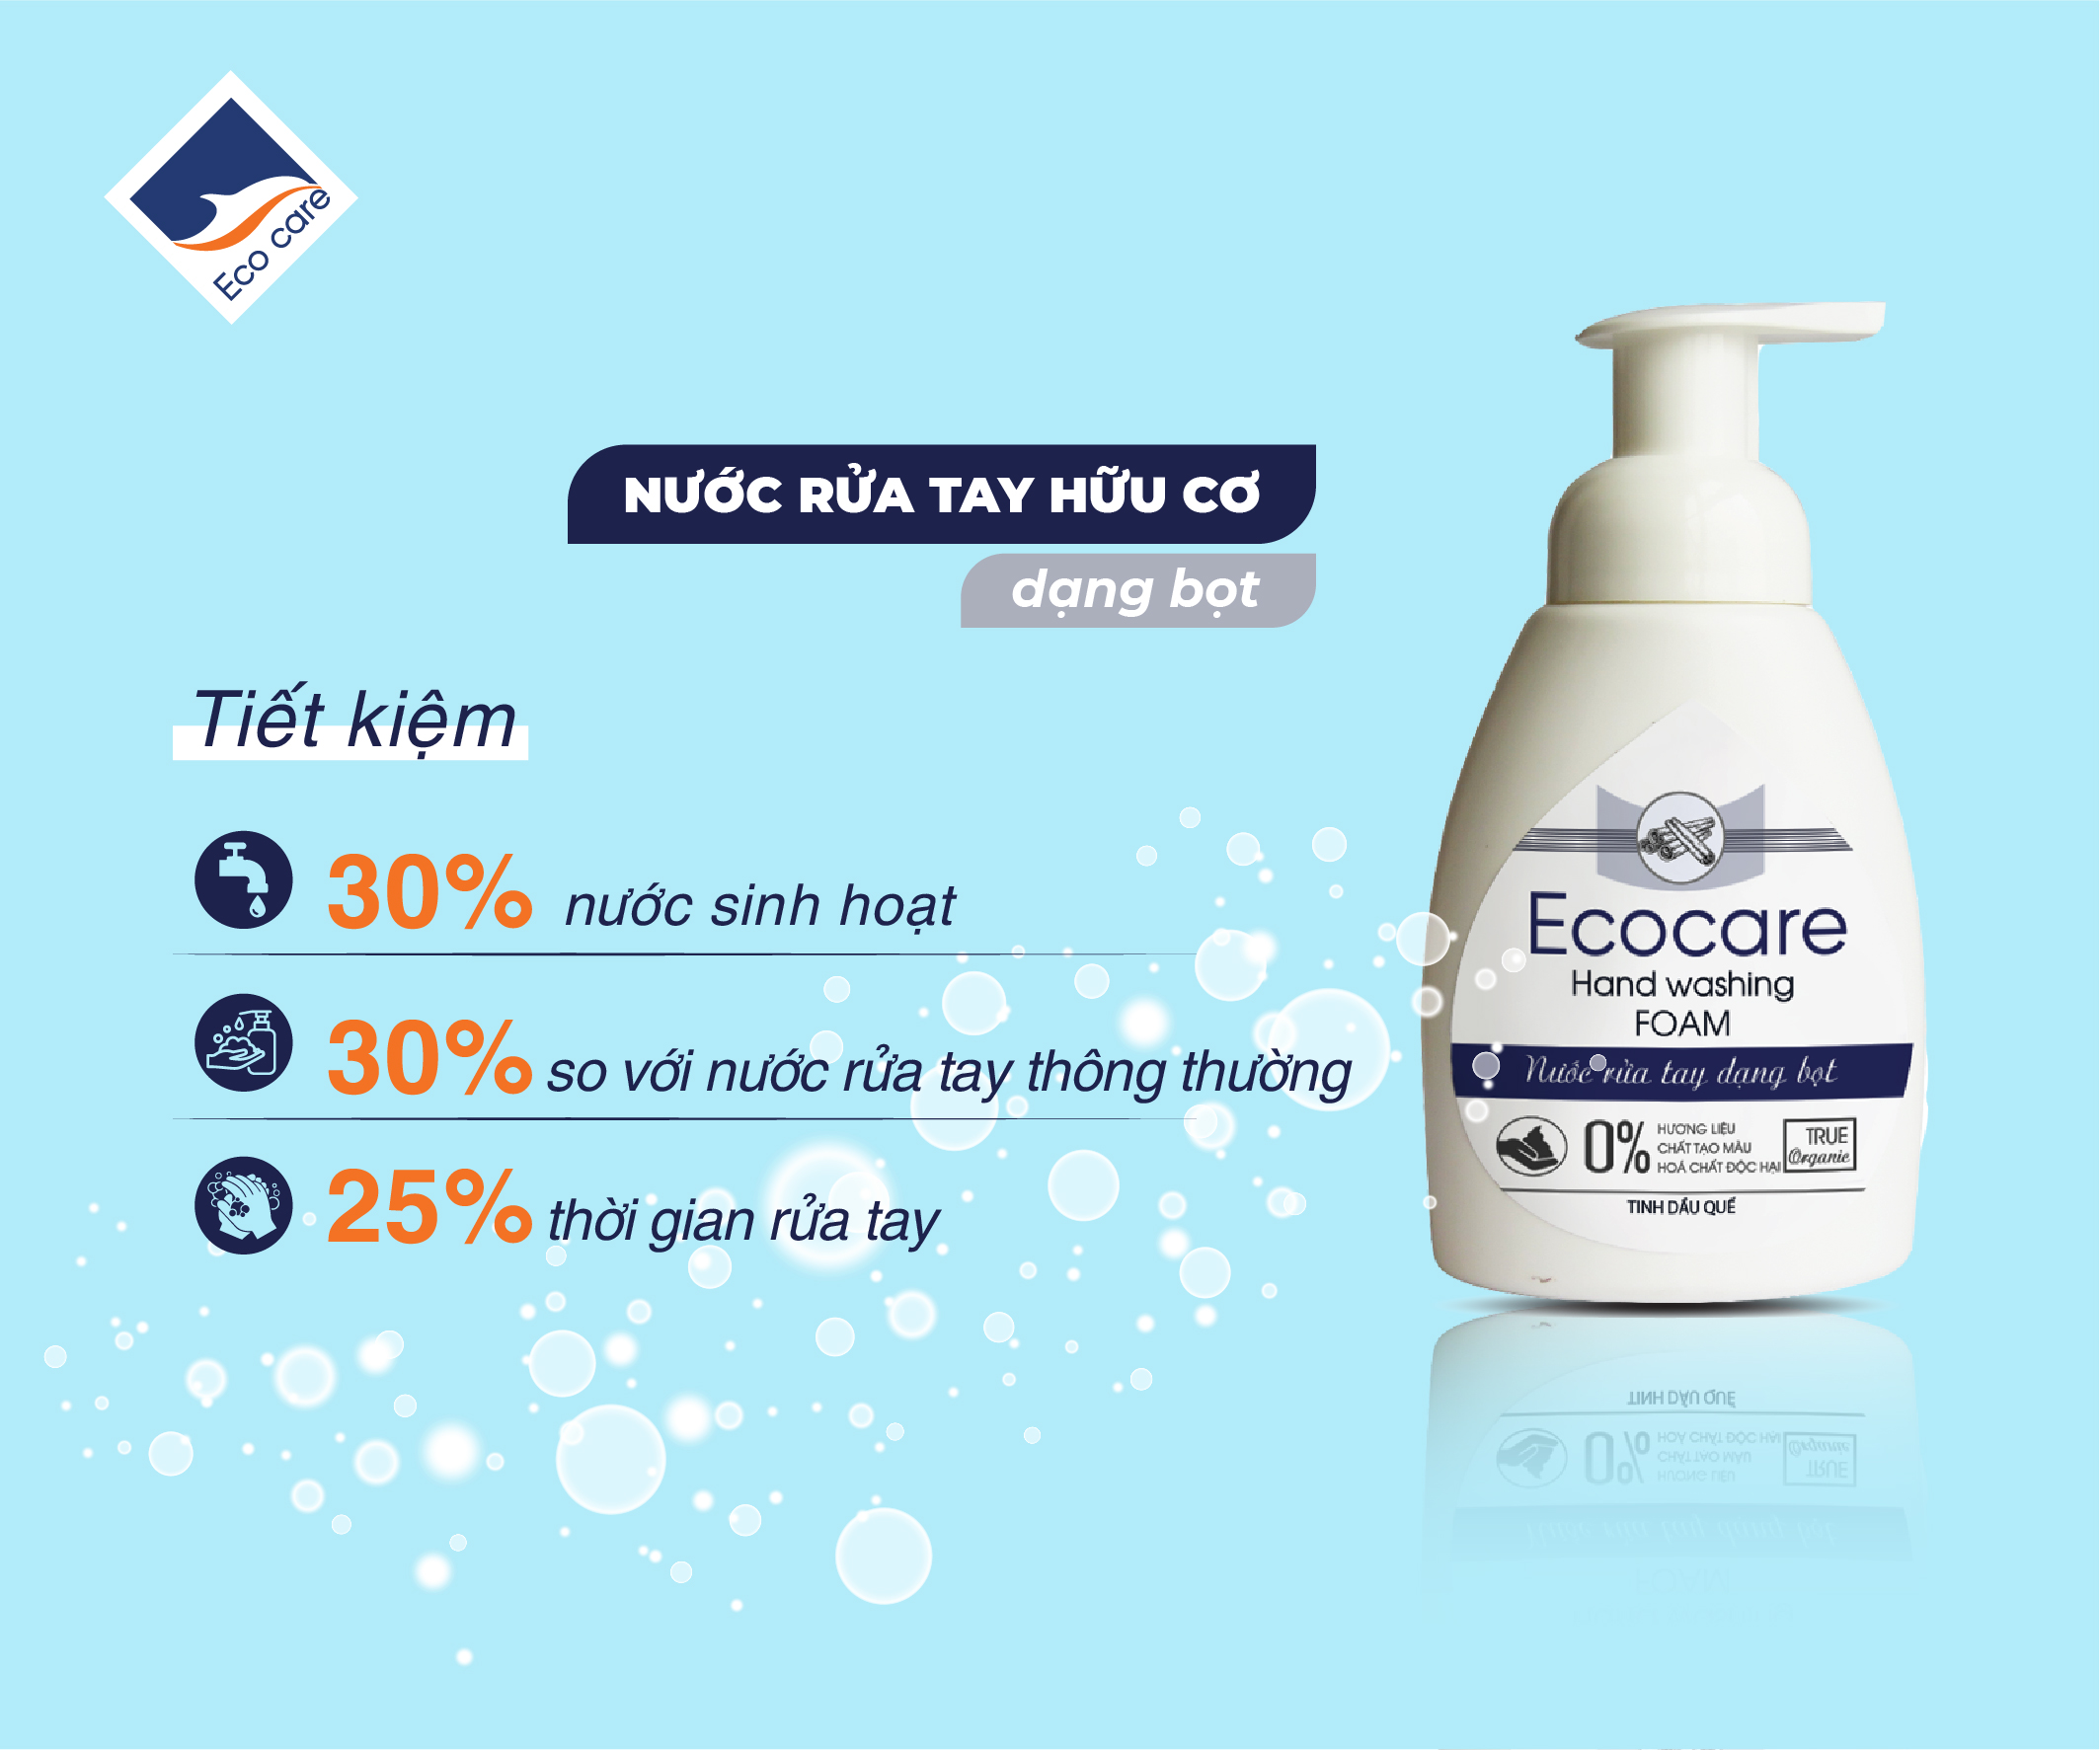 Nước rửa tay hữu cơ diệt khuẩn dạng bọt tinh dàu Cam 250ml thương hiệu Ecocare